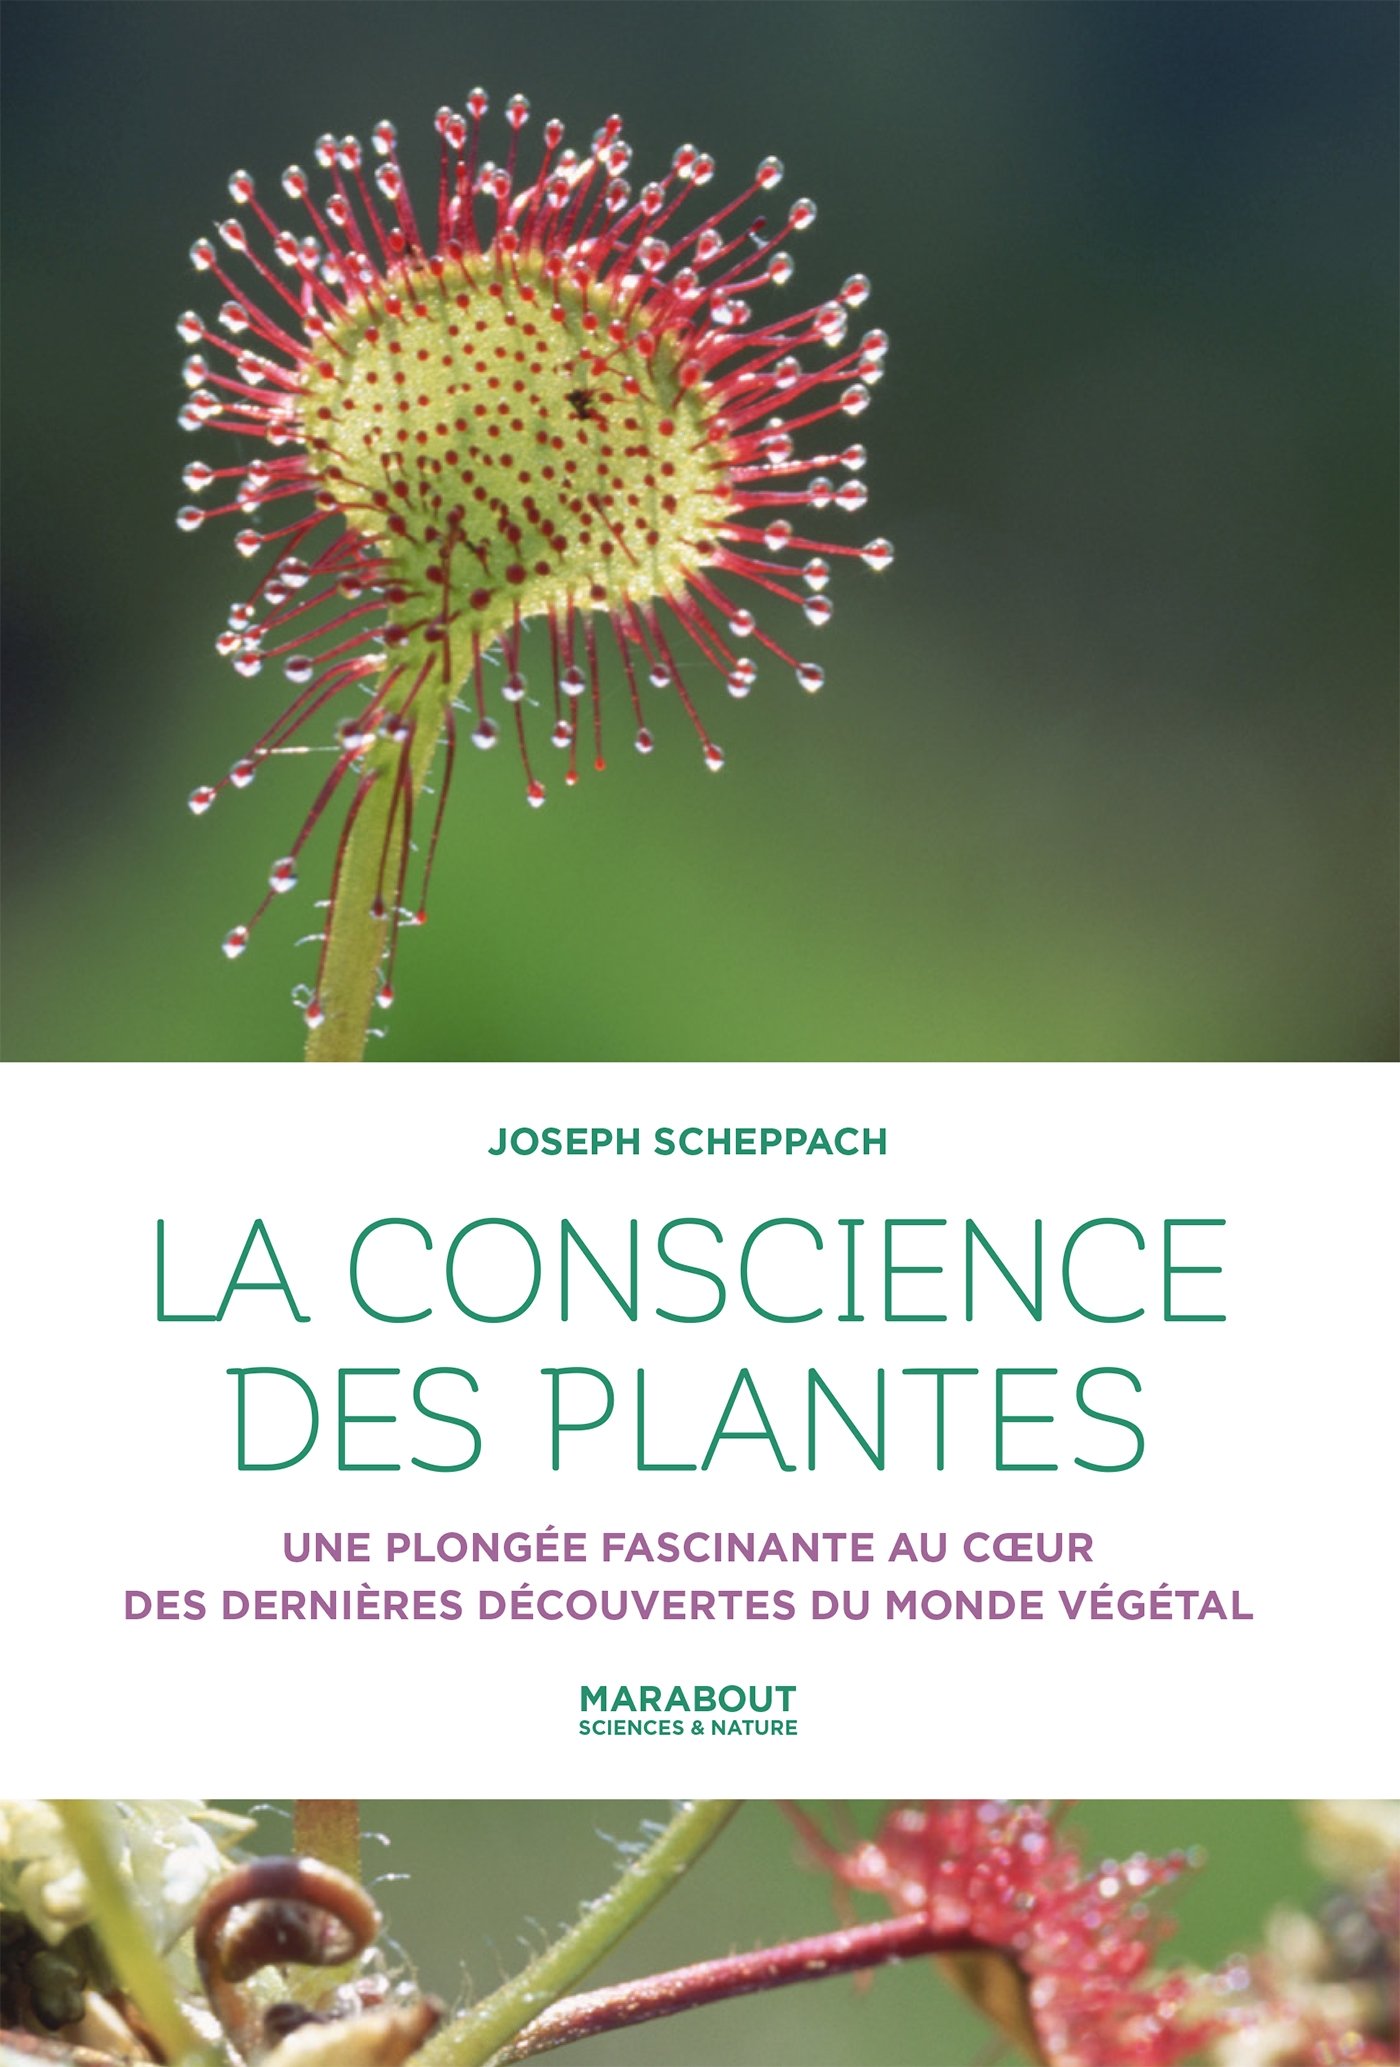 Livre, la conscience des plantes, Joseph Scheppach, plantes, botanique, découverte, science, végétal, sensibilité, conscience